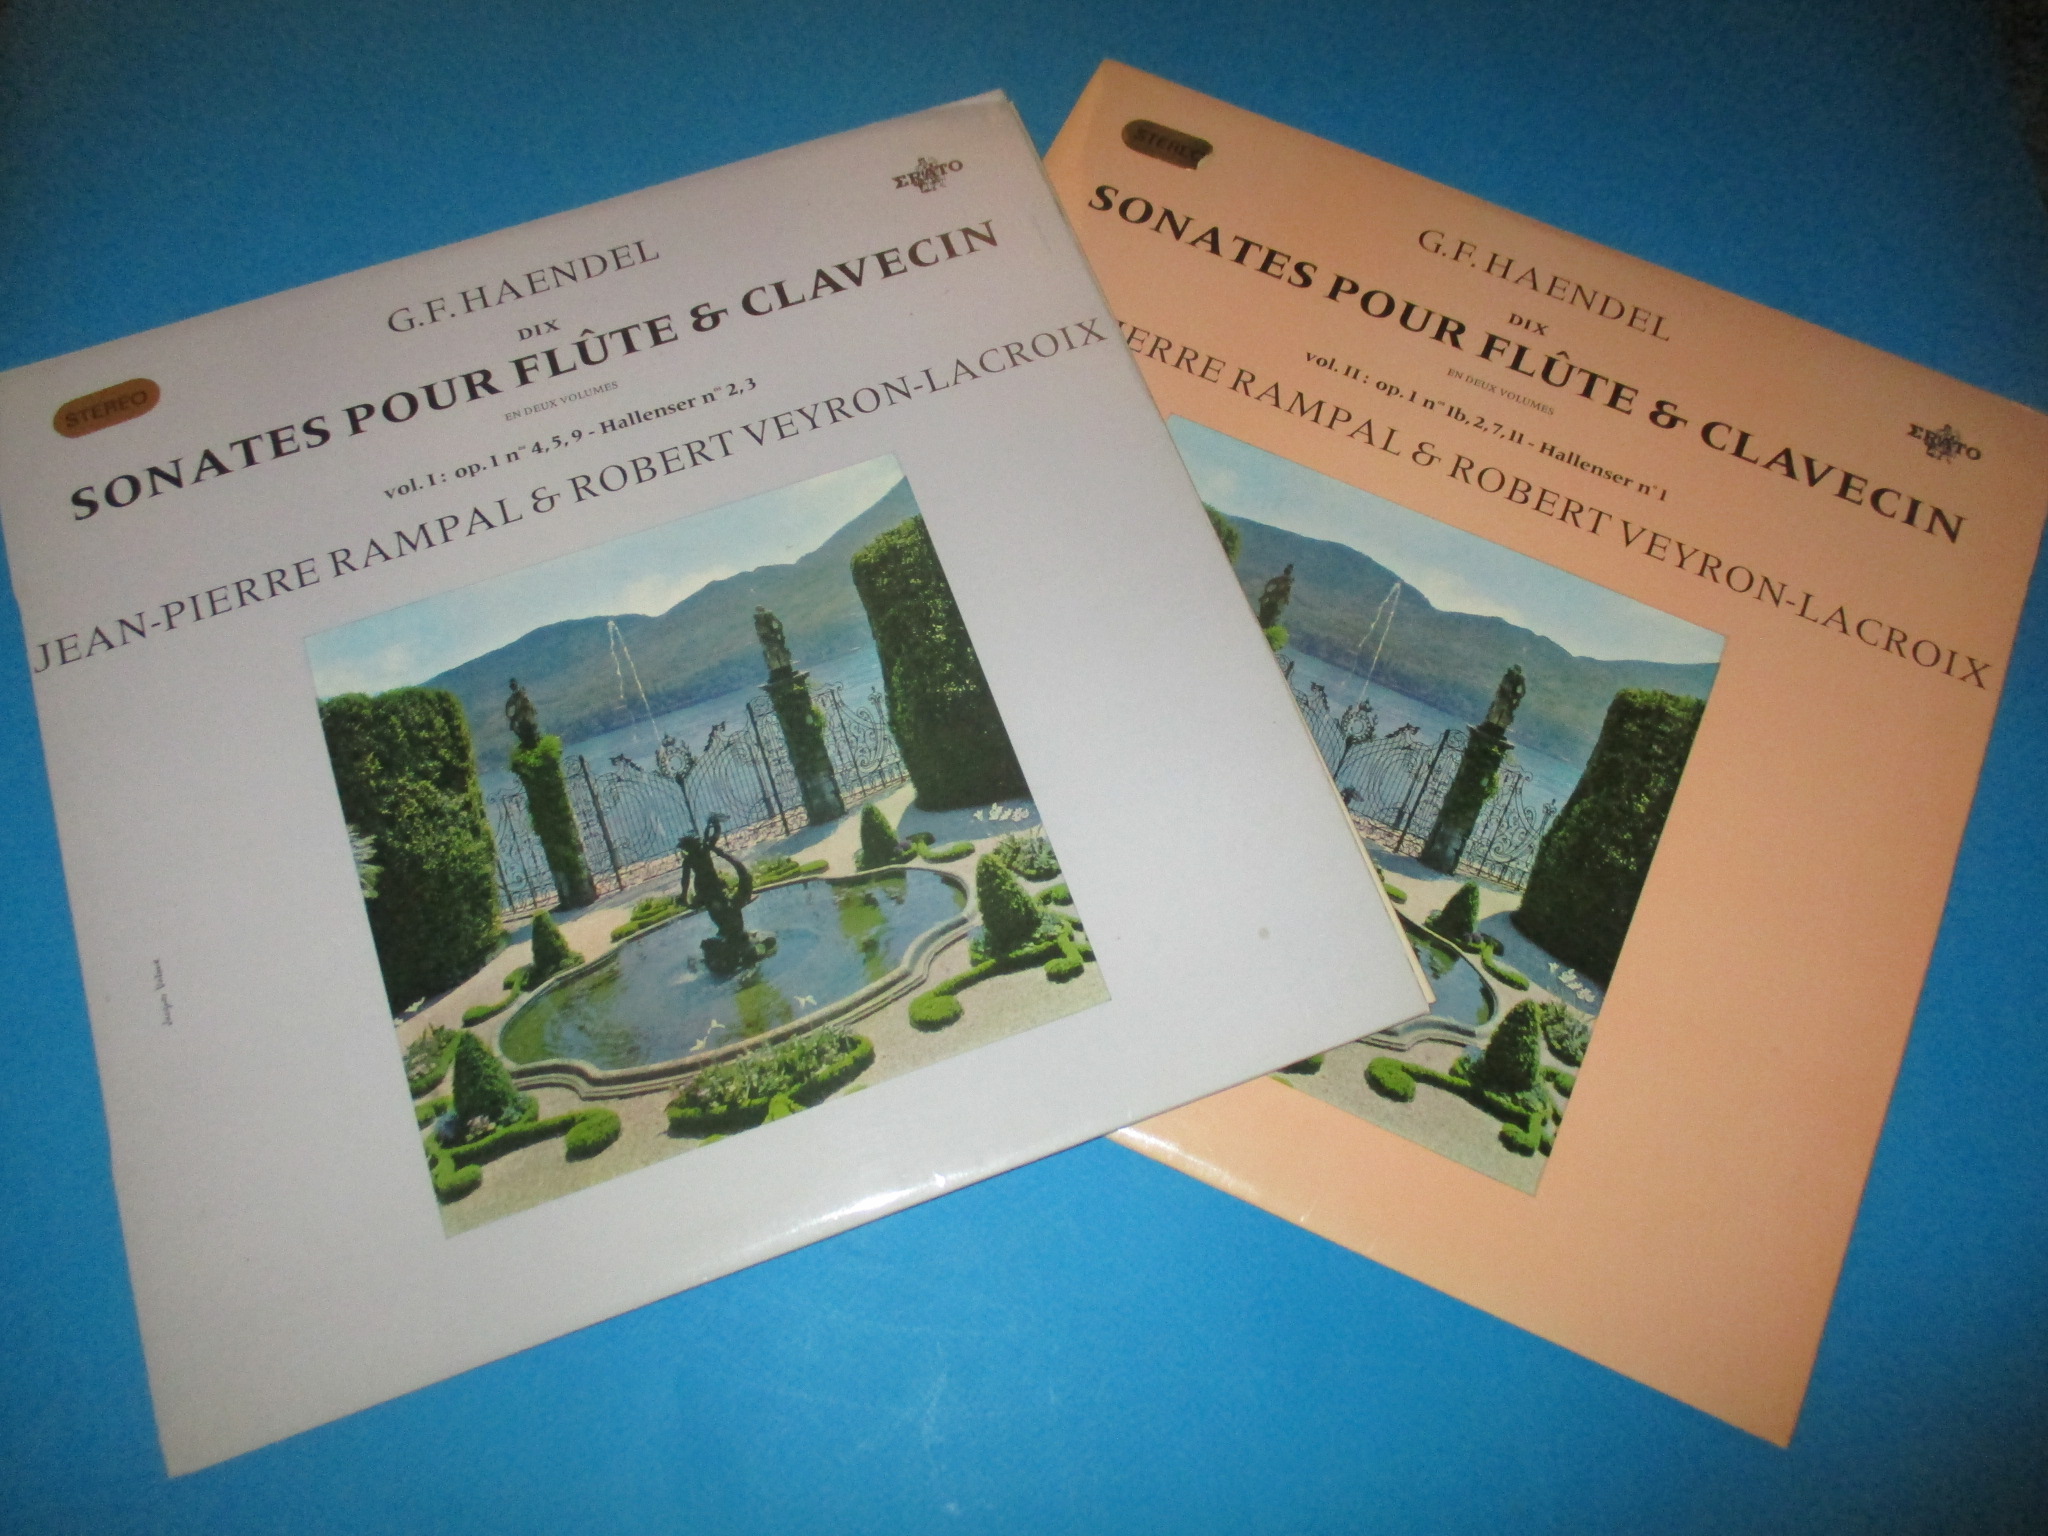 Lot 2 disques G. F. Haendel, Dix sonates pour flûte & clavecin, Jean-Pierre Rampal & Robert Veyron-Lacroix, 2 x 33 tours Erato